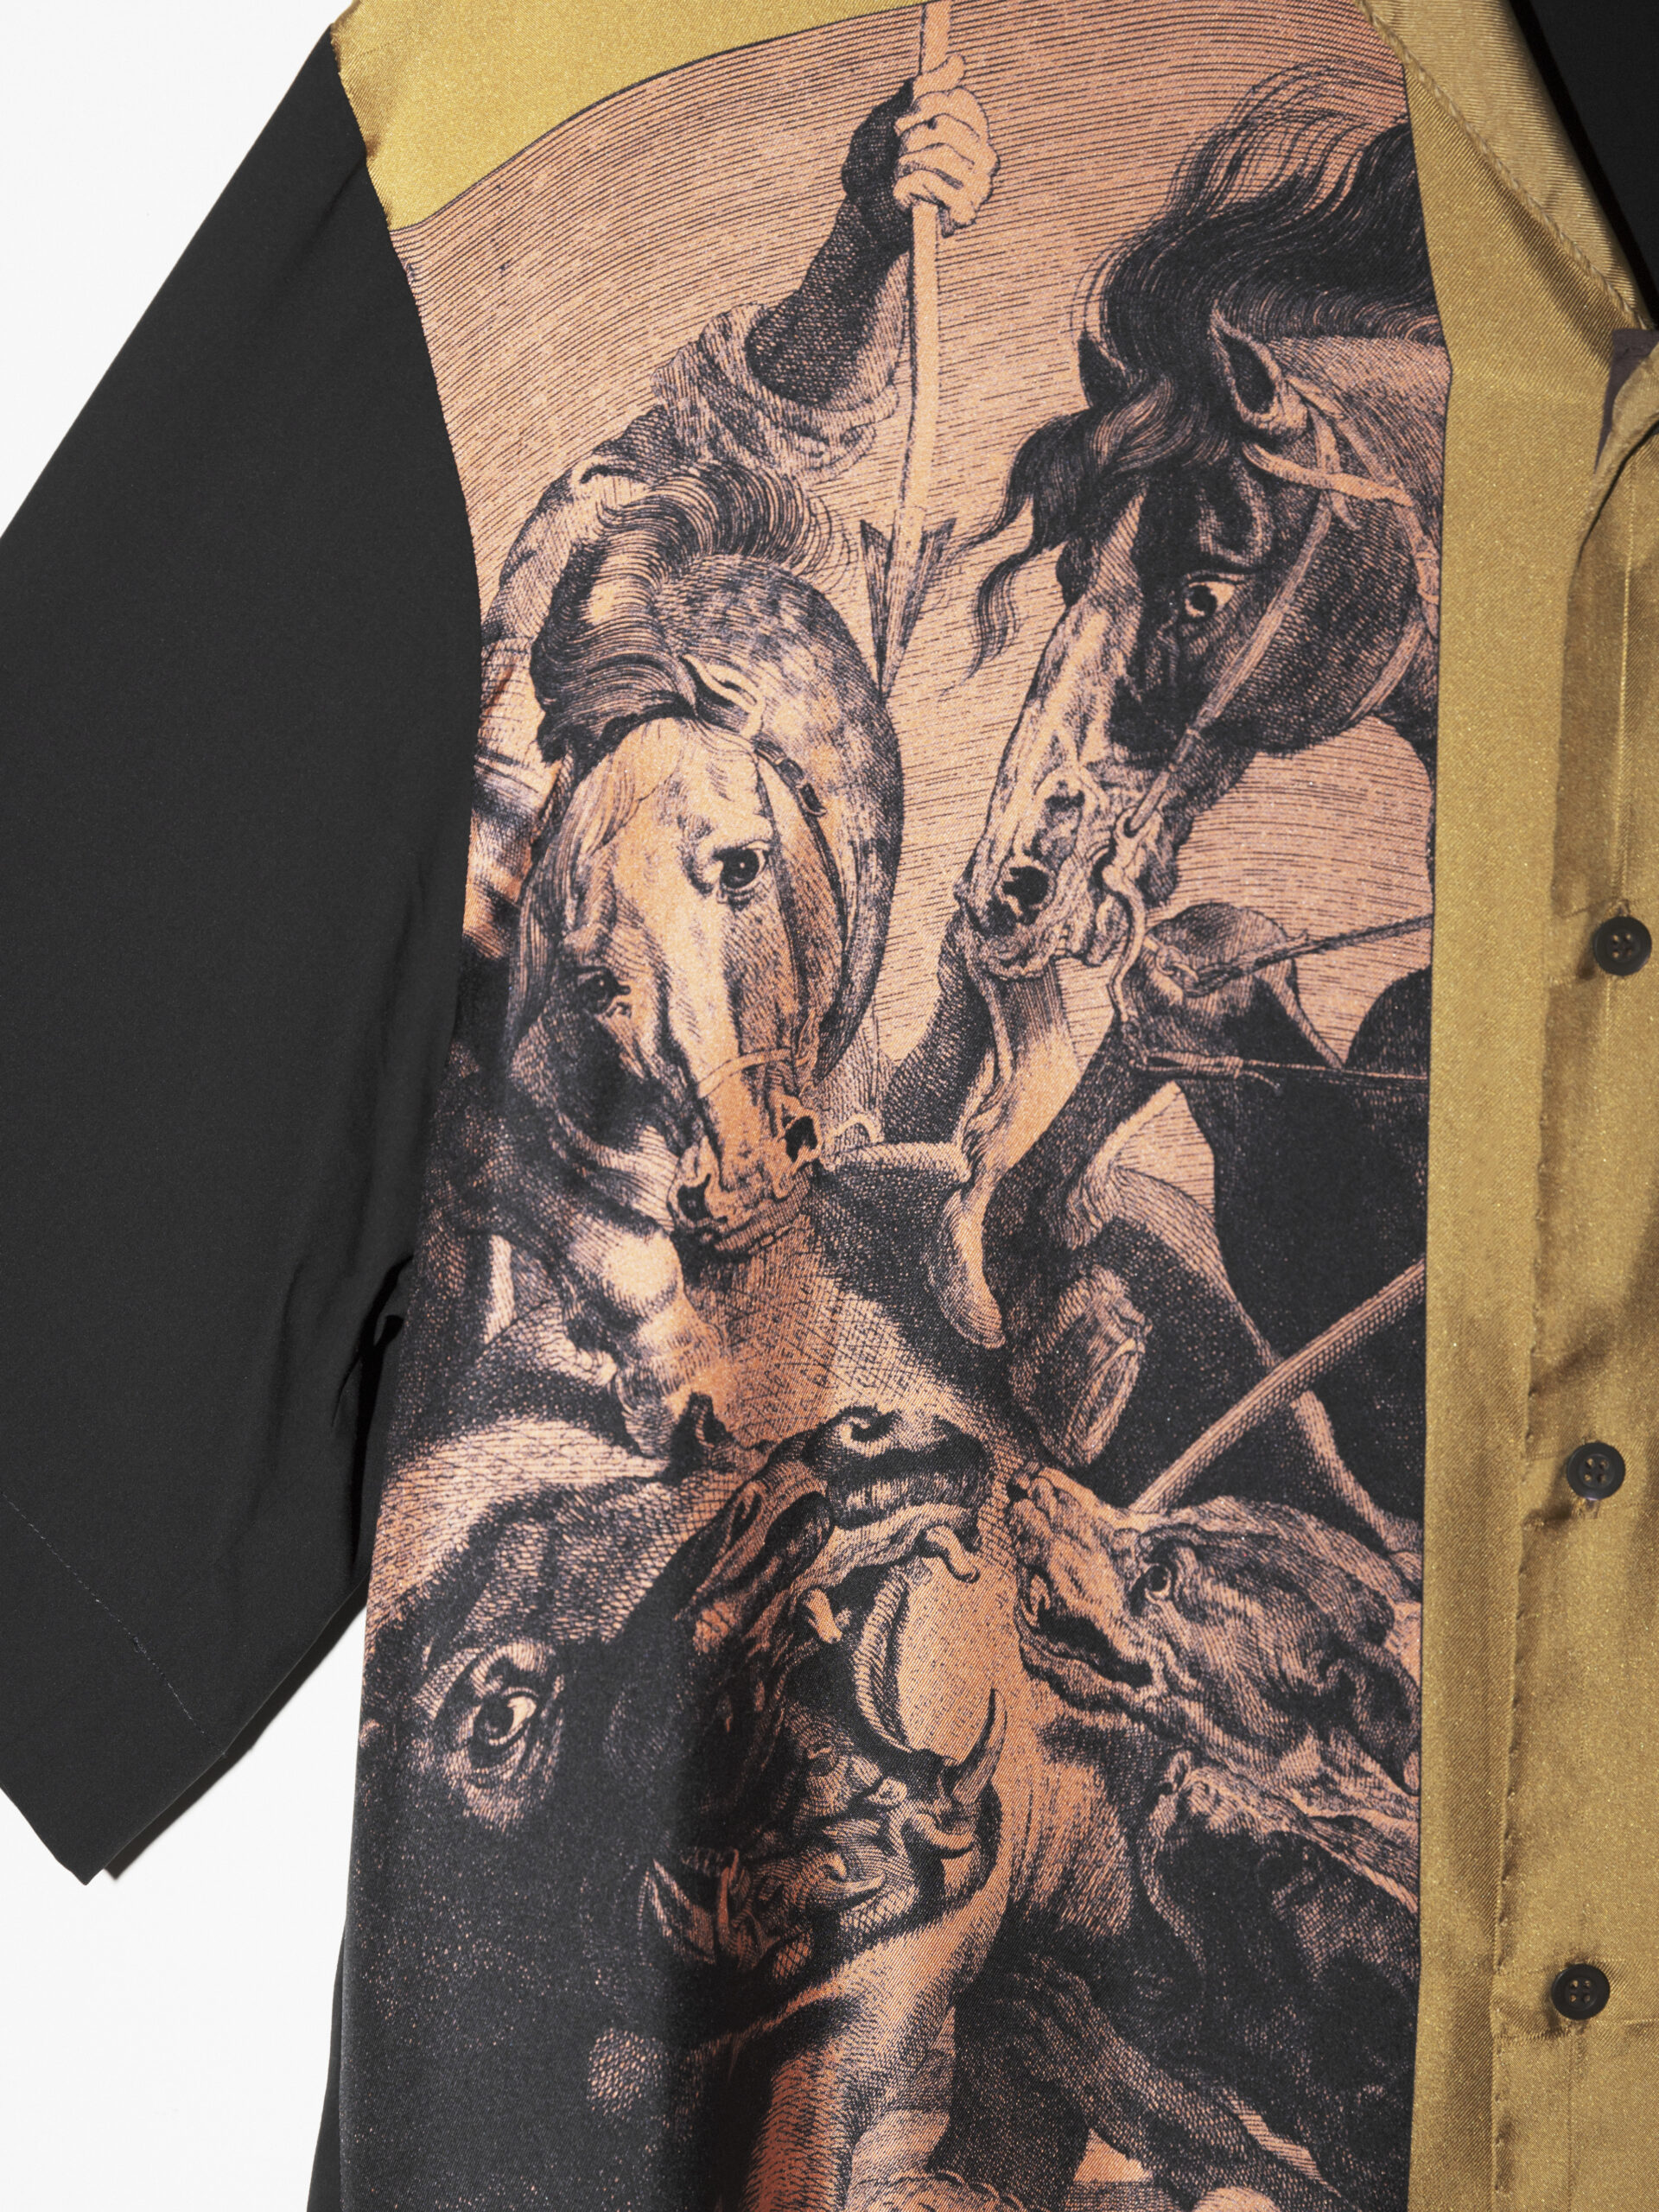 「ドリス ヴァン ノッテン」のプリントシルクオープンカラーシャツ ¥92,400